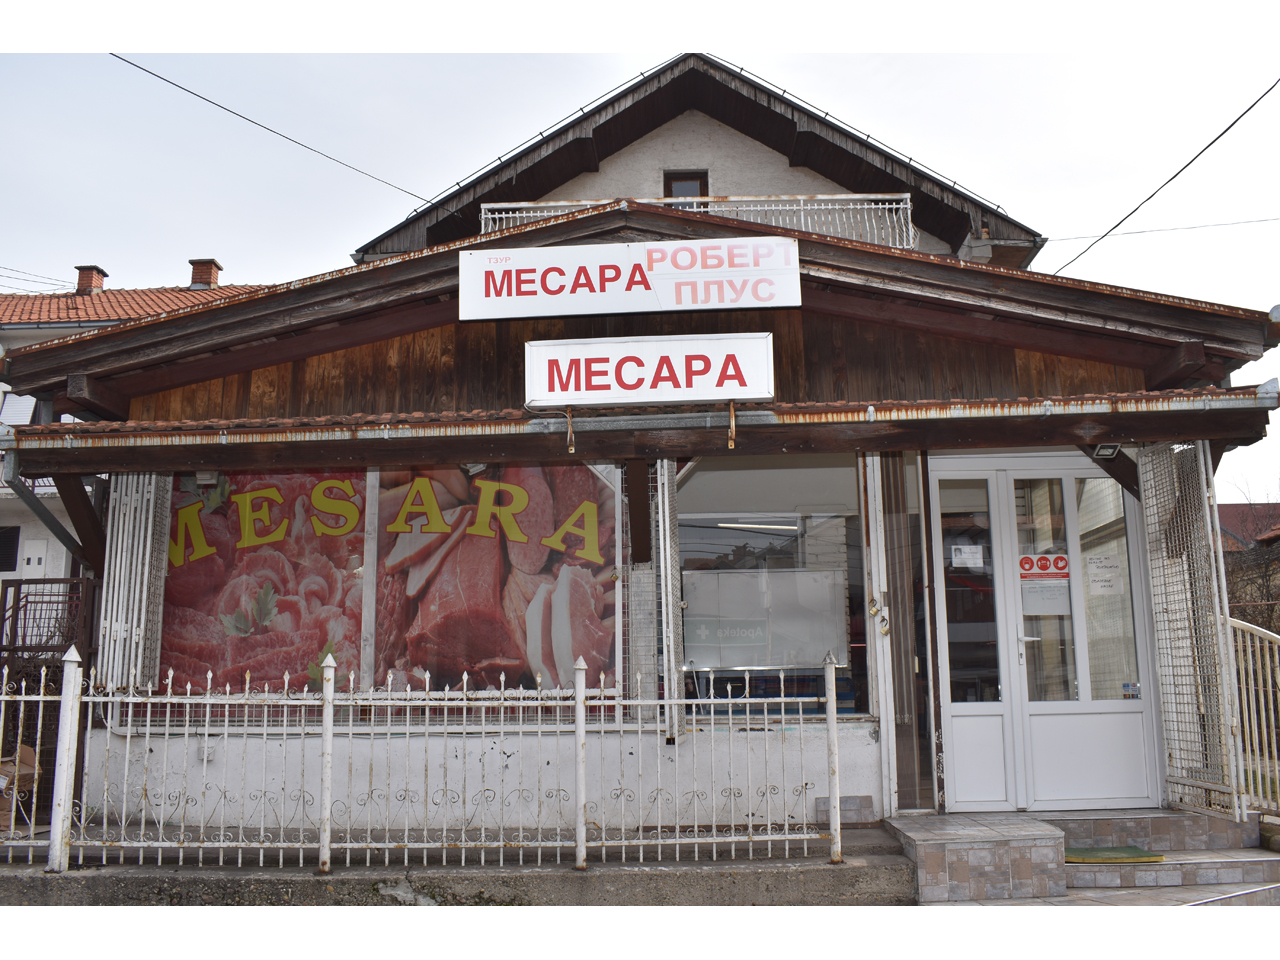 BUTCHER SHOP ROBERT PLUS Butchers, meat products Beograd